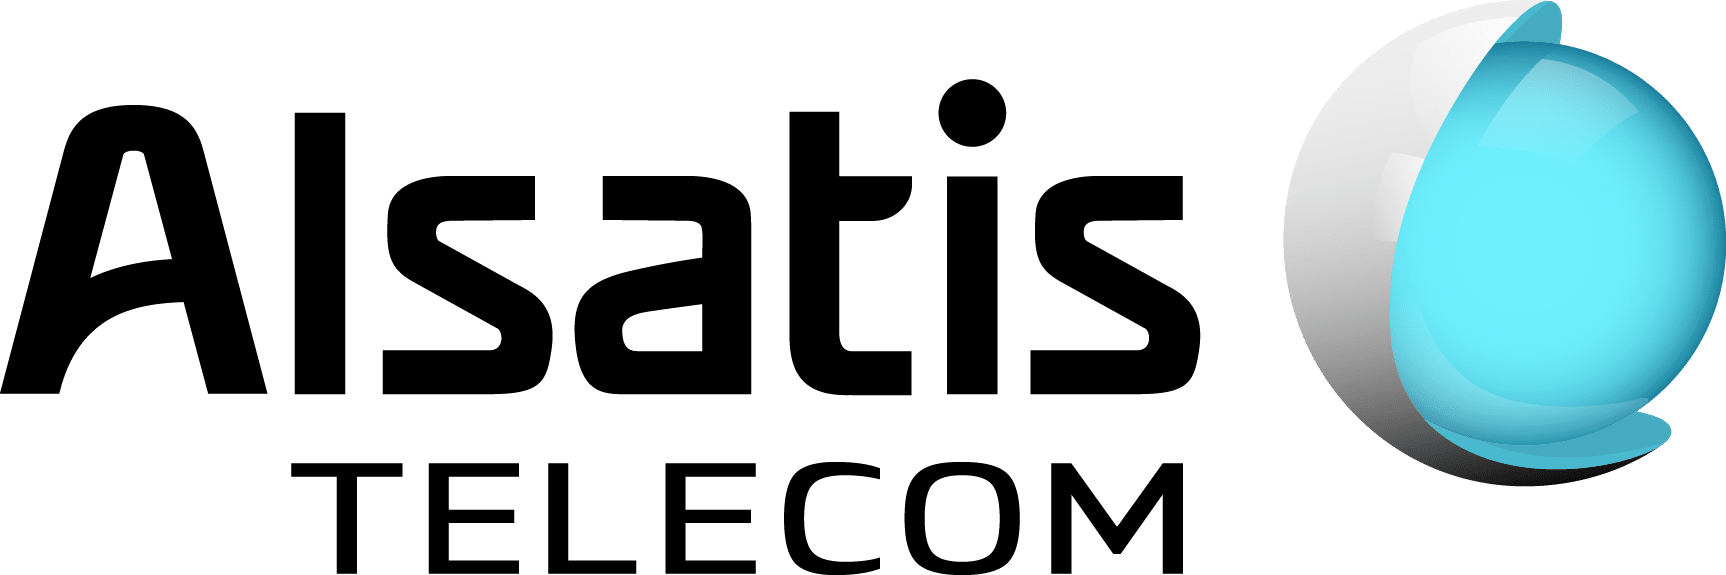 Alsatis_logo_Telecom_horizontale